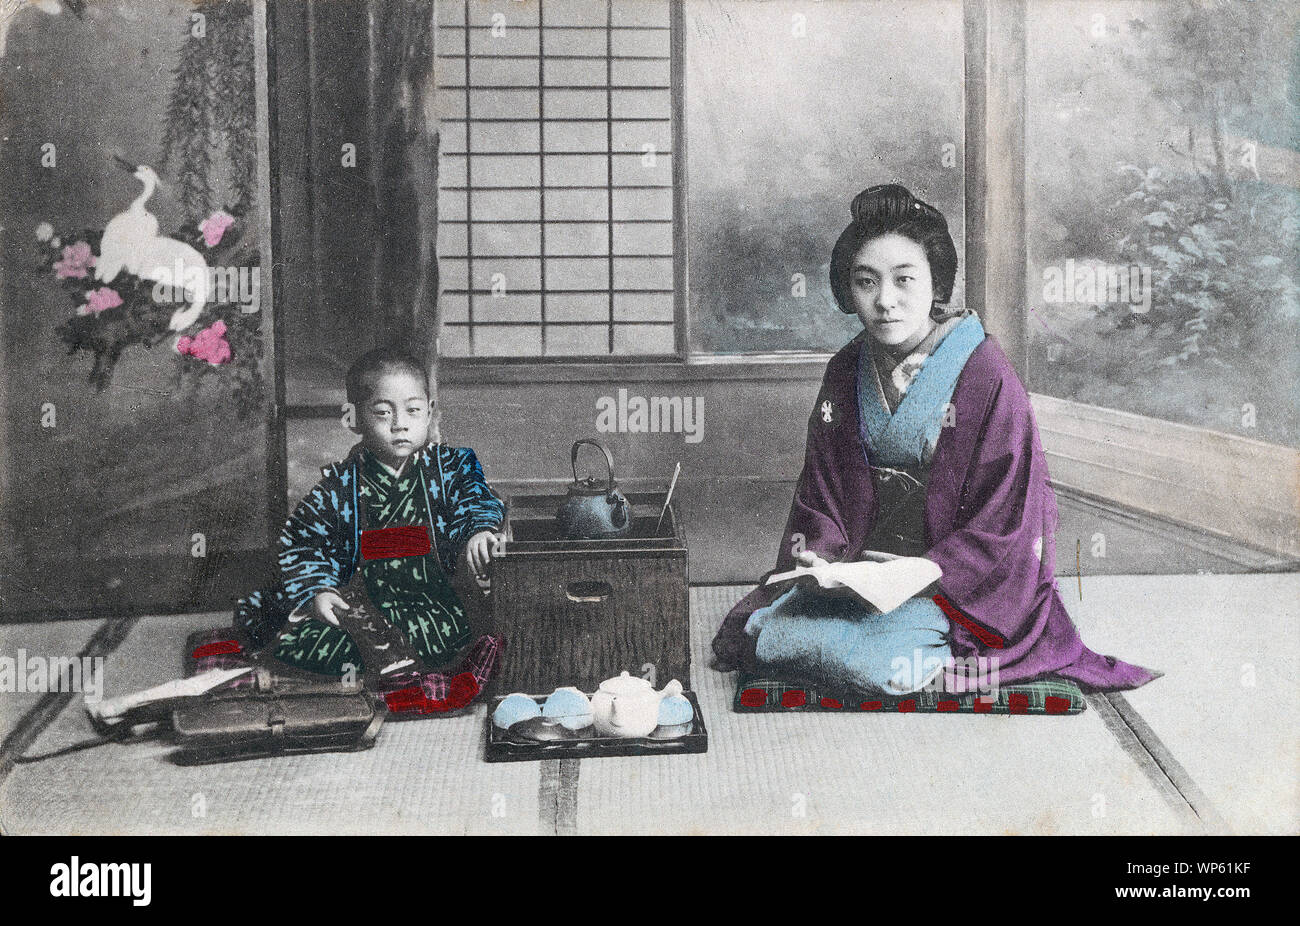 [ 1900 - Japon Japanese Woman and Boy en Kimono ] - une jeune femme en kimono traditionnel et style de coiffure et un jeune garçon assis à côté d'un hakohibachi, un brasero enfermé dans une boîte en bois. La femme tient un livre. En face de la boîte se trouve un plateau avec une Théière et tasses à thé. Devant le garçon est un sac en cuir. 20e siècle vintage carte postale. Banque D'Images